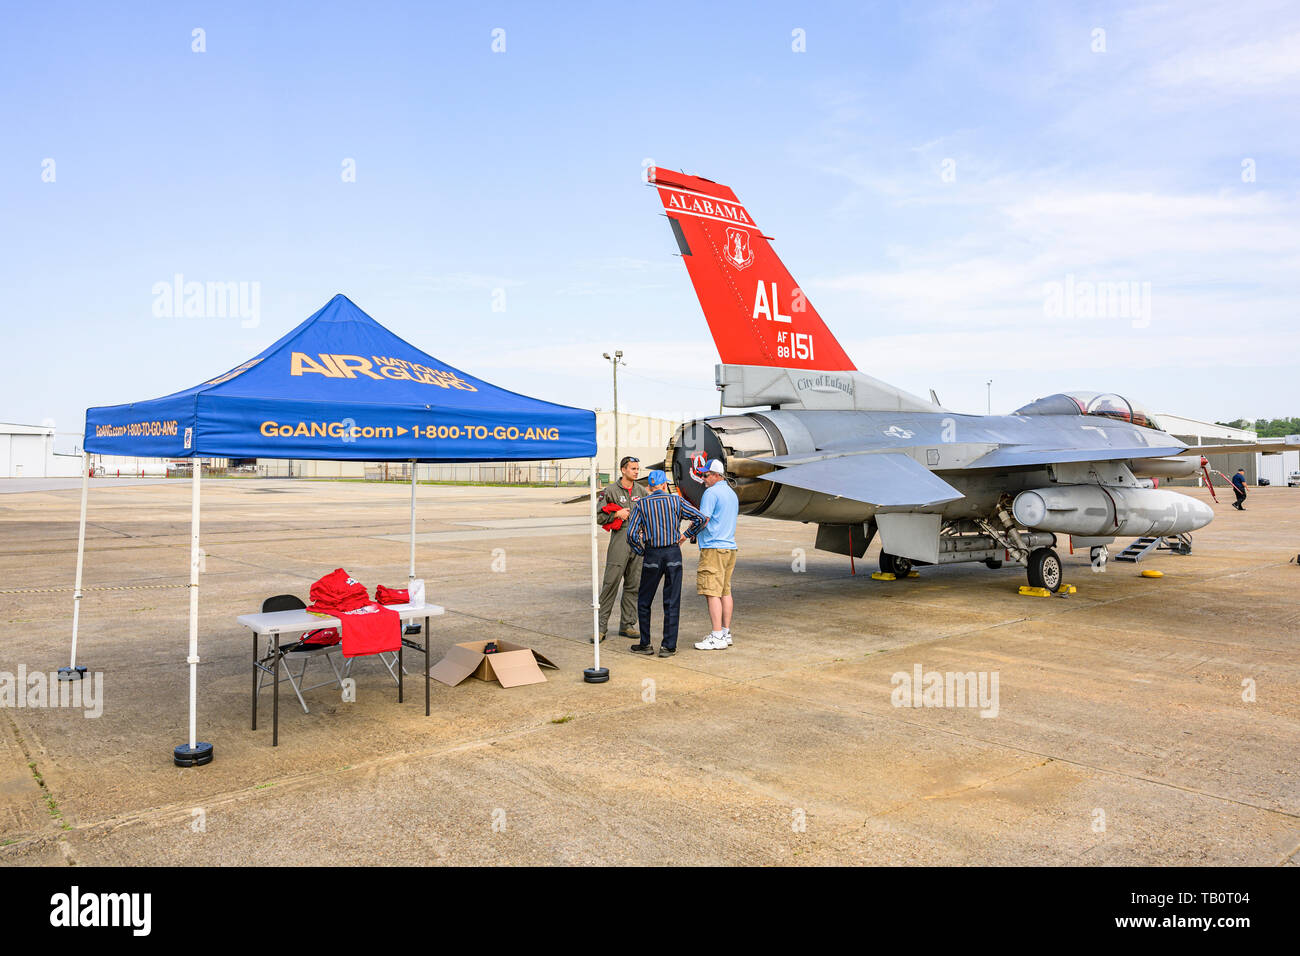 187Th Fighter Wing dell'Alabama Air National Guard, Tuskegee aviatori, coda rossa pilota squadrone di parlare con i visitatori accanto alla sua F-16 jet da combattimento. Foto Stock